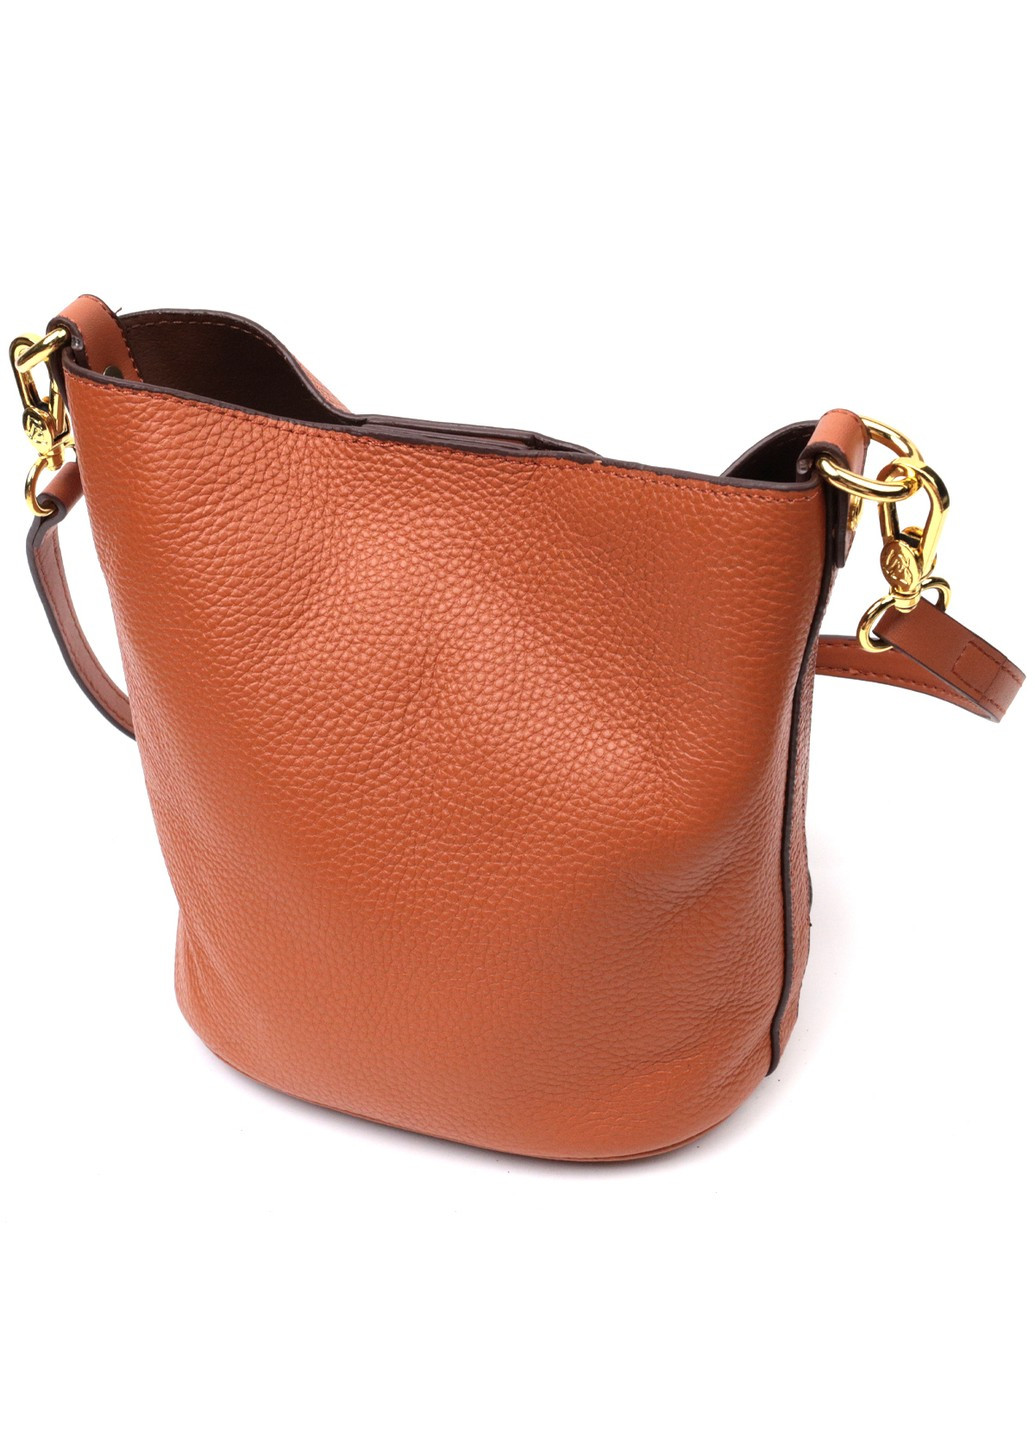 Небольшая женская сумка с автономной косметичкой внутри из натуральной кожи 22366 Коричневая Vintage (276461838)